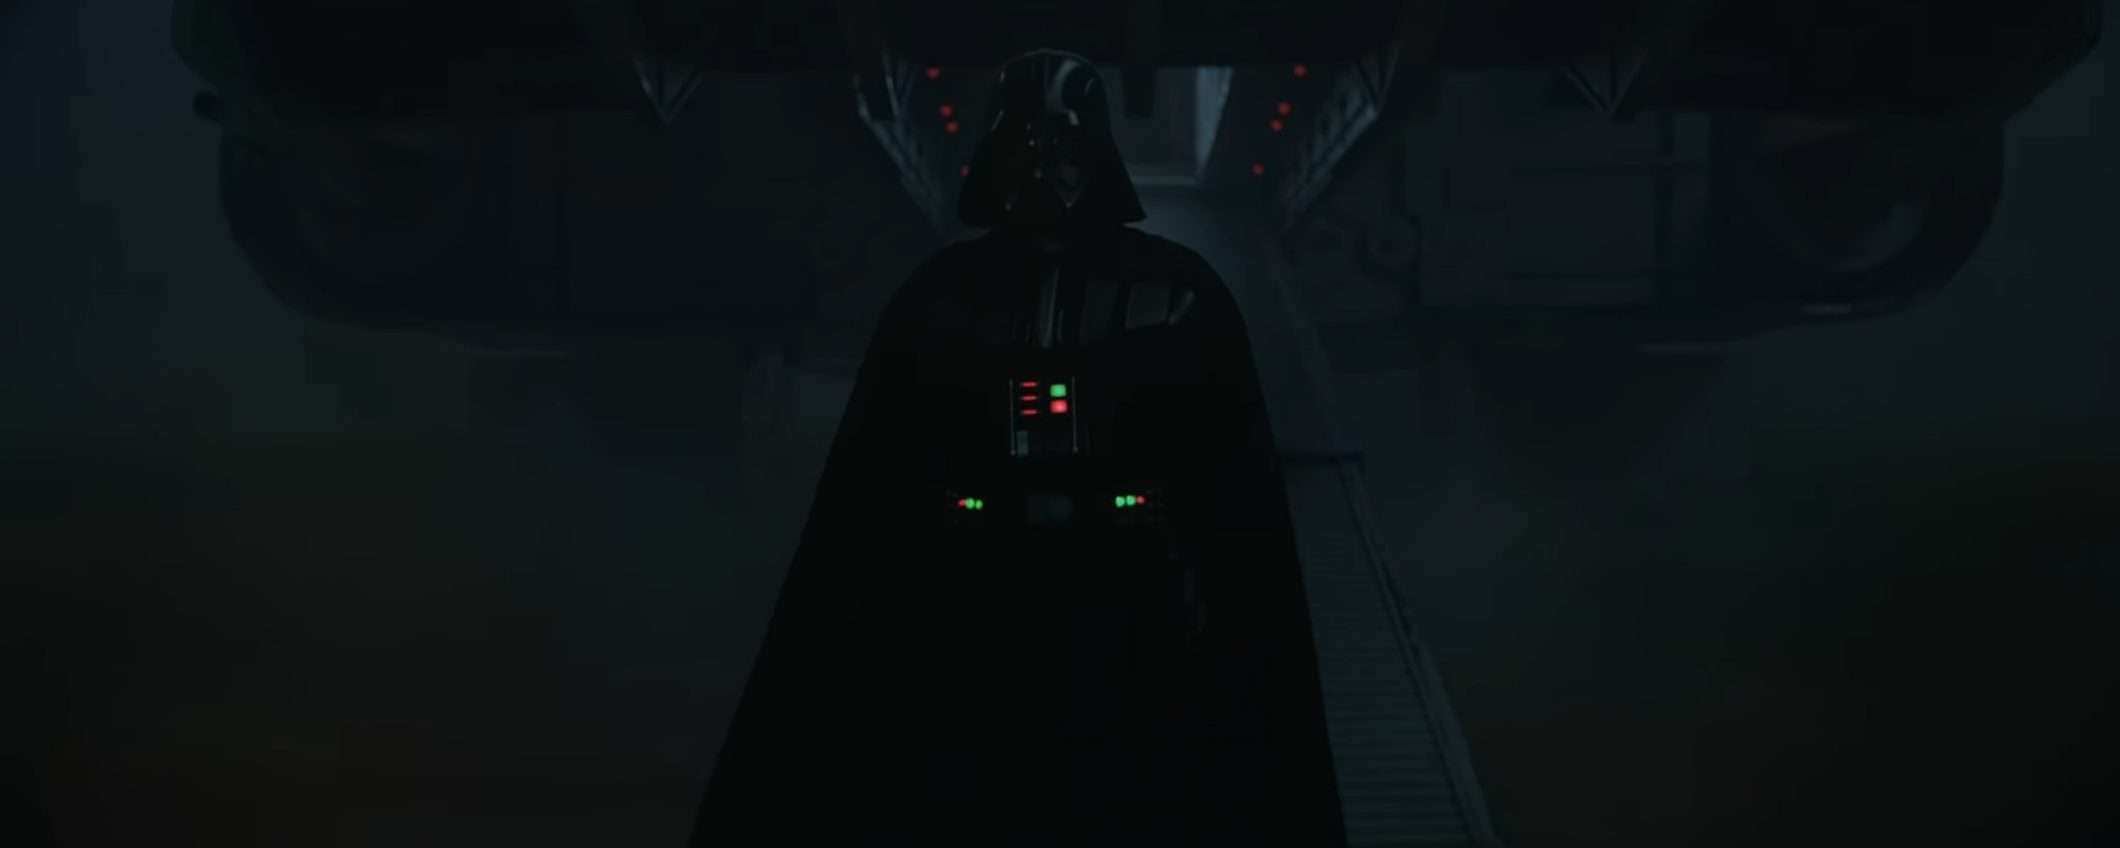 James Earl Jones lascia la voce di Darth Vader all'IA